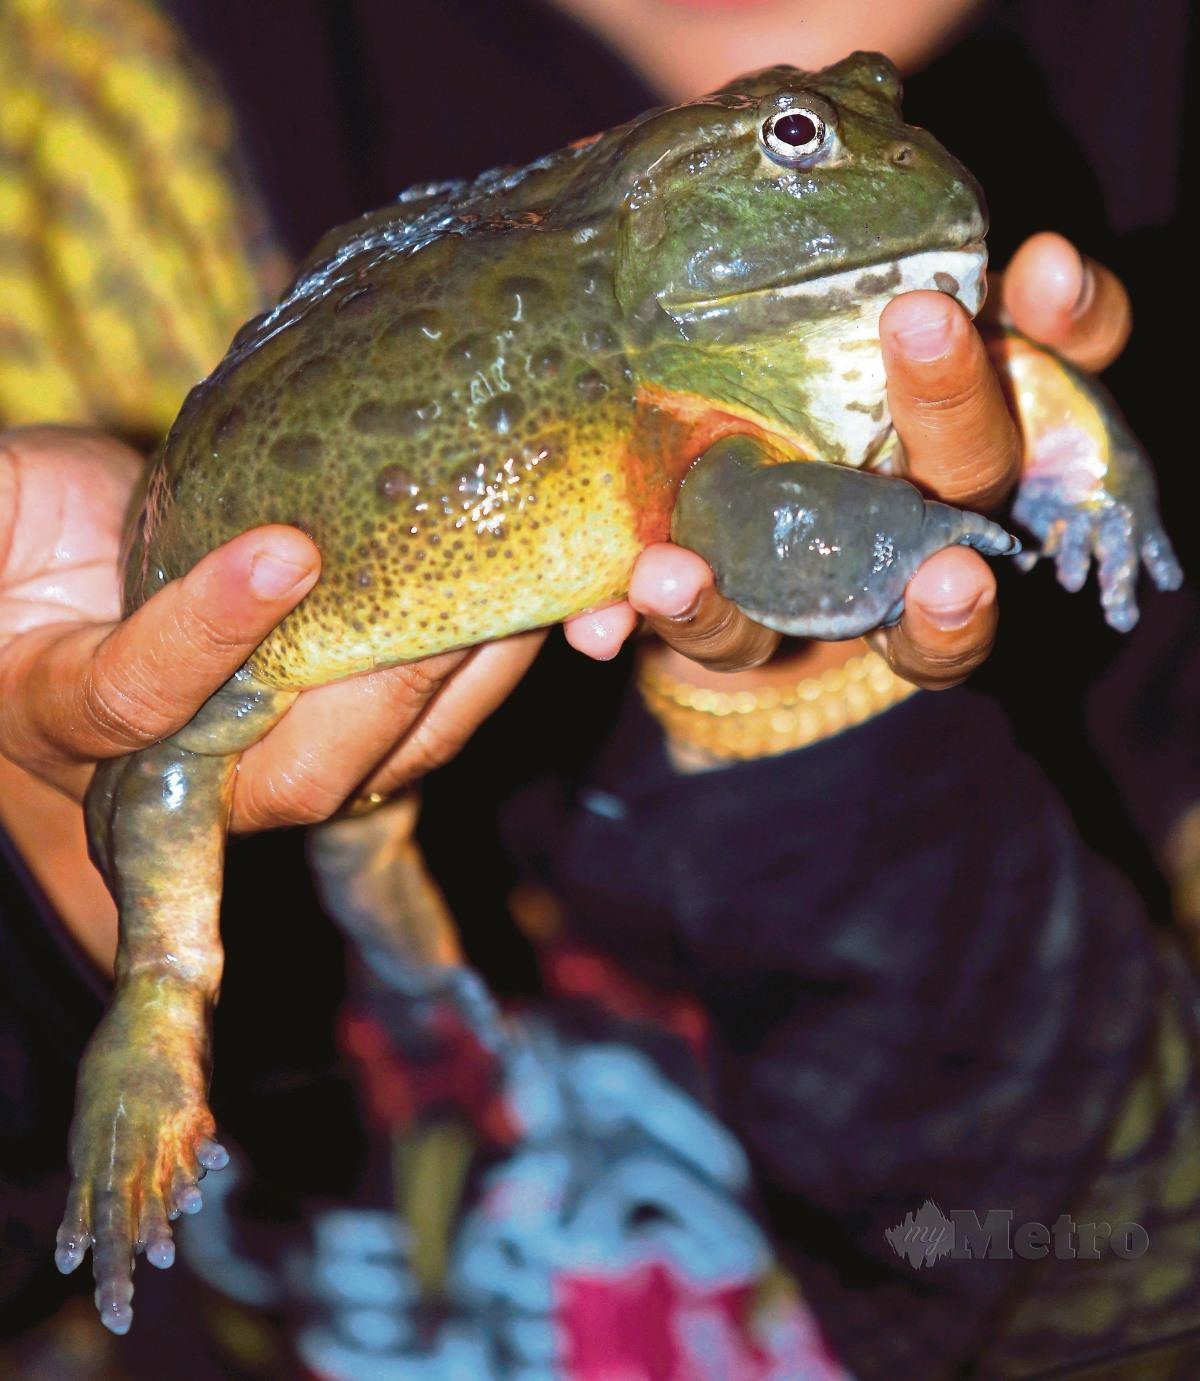 TEKSTUR kulit yang berlendir dan menggerutu menyebabkan ramai geli dengan katak.